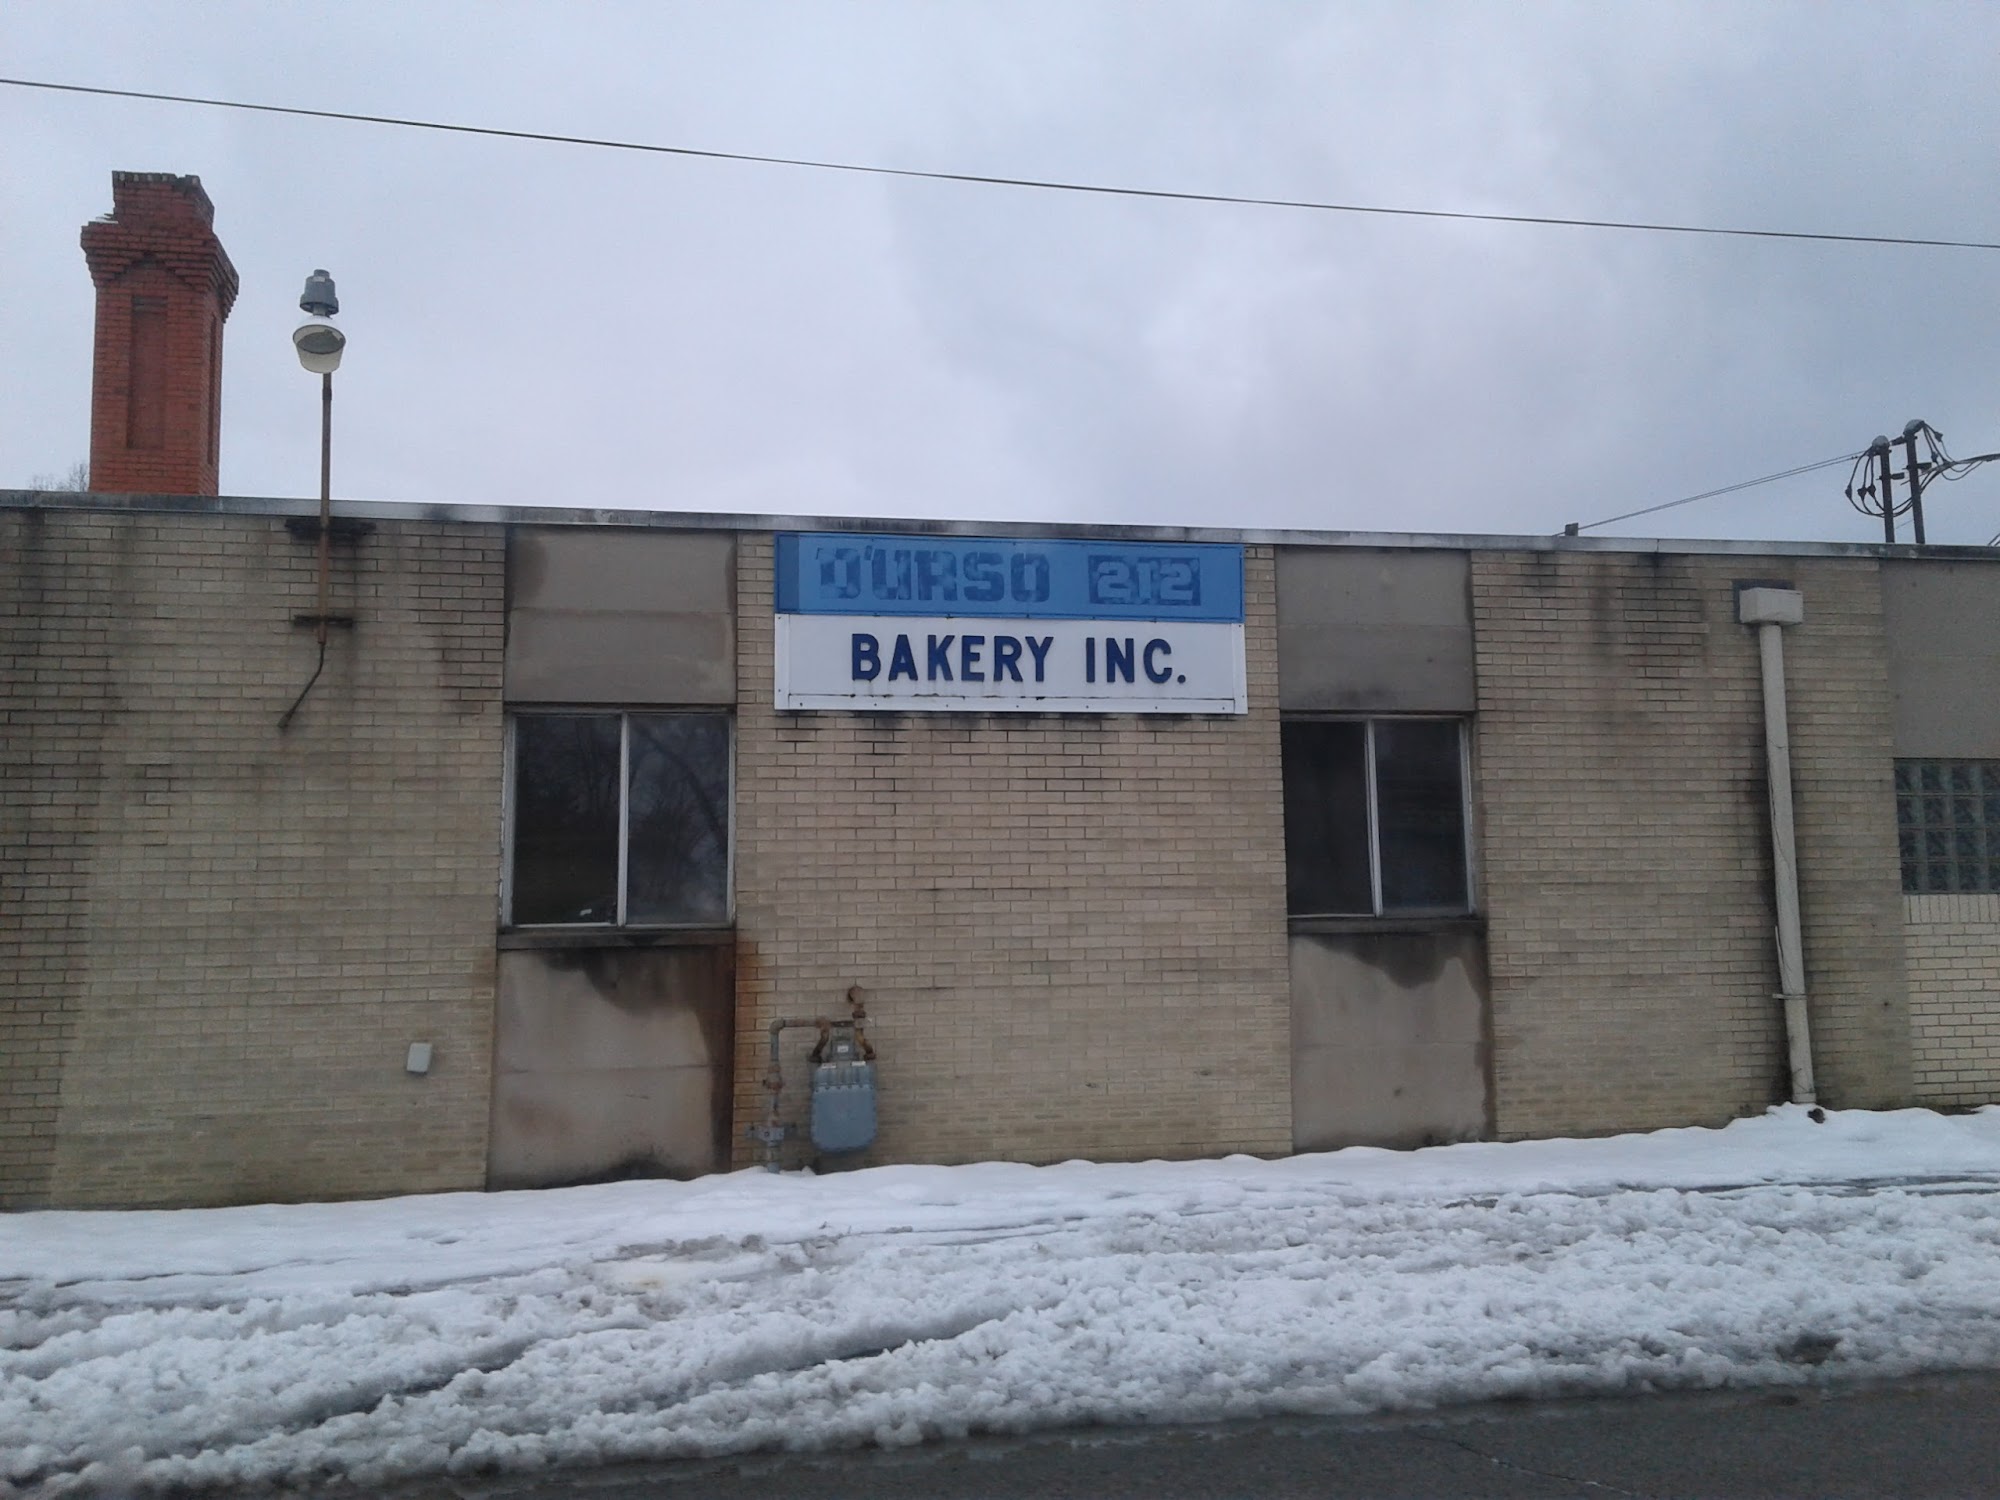 D'Urso Bakery Inc